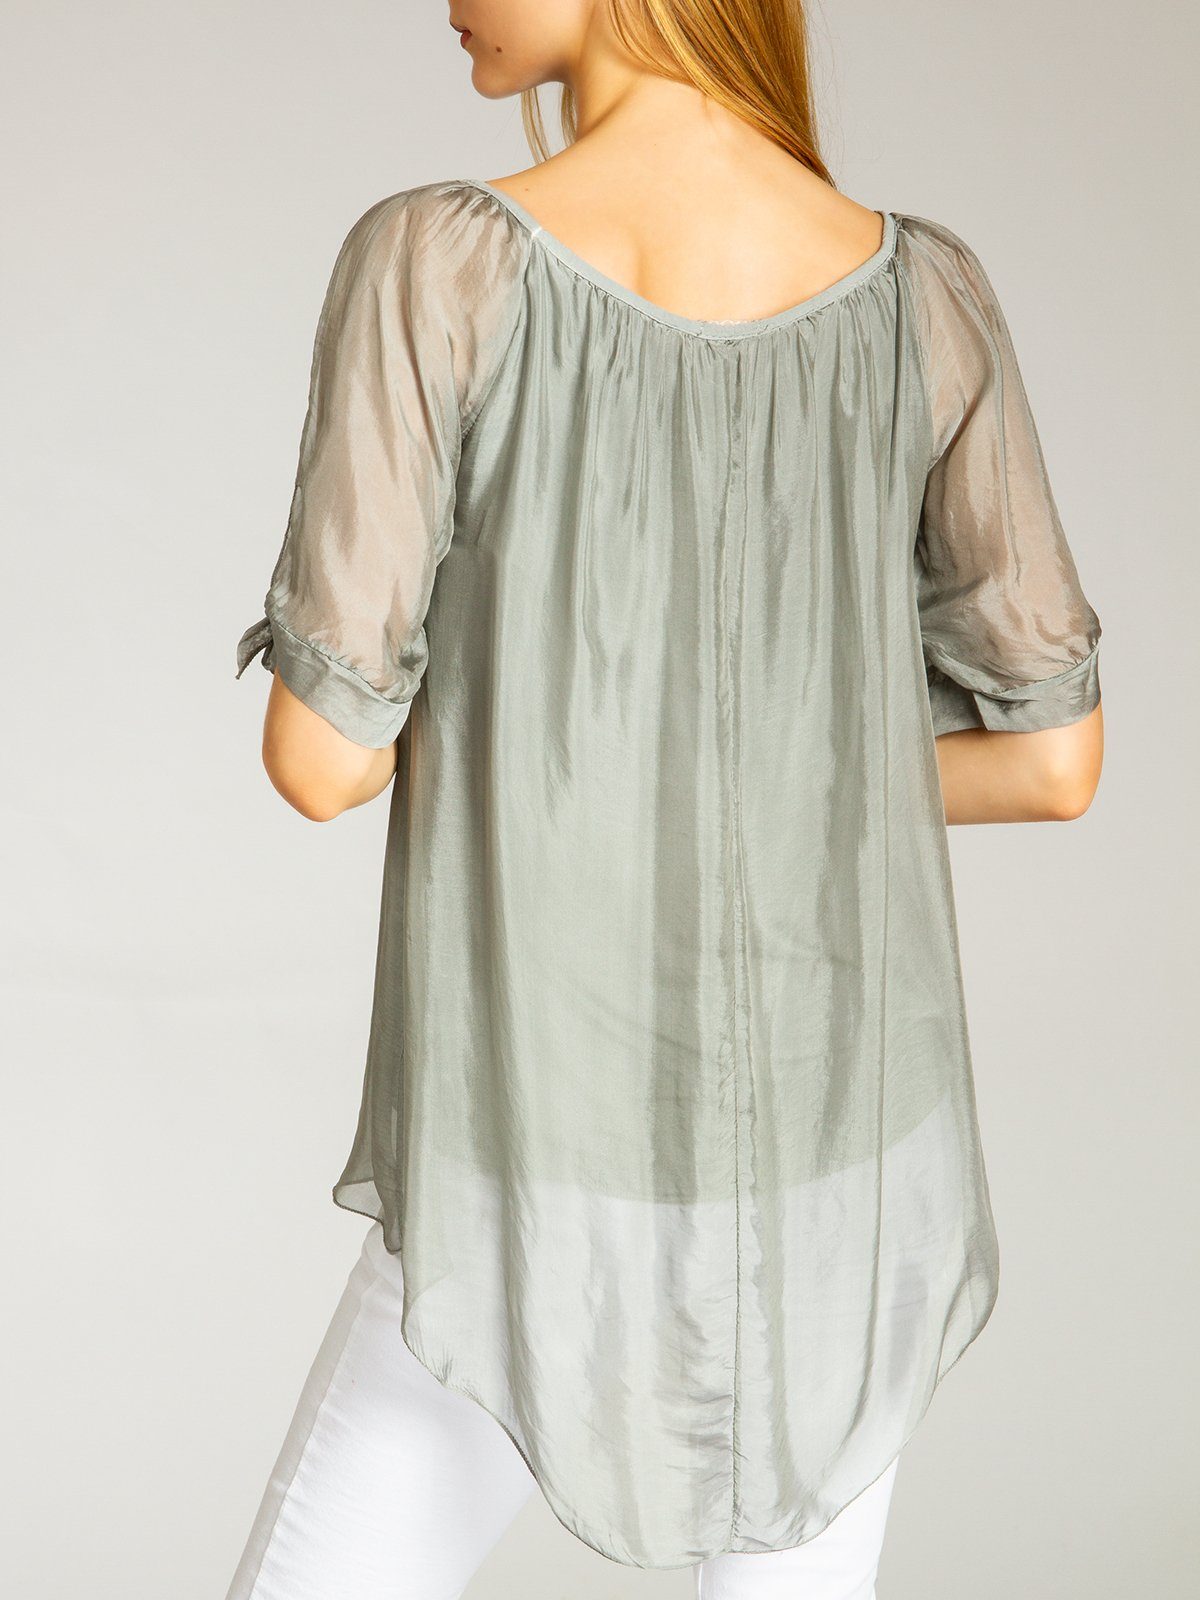 elegante Shirtbluse lange Caspar Damen BLU020 leichte dunkelgrau Bluse mit Seidenanteil Sommer